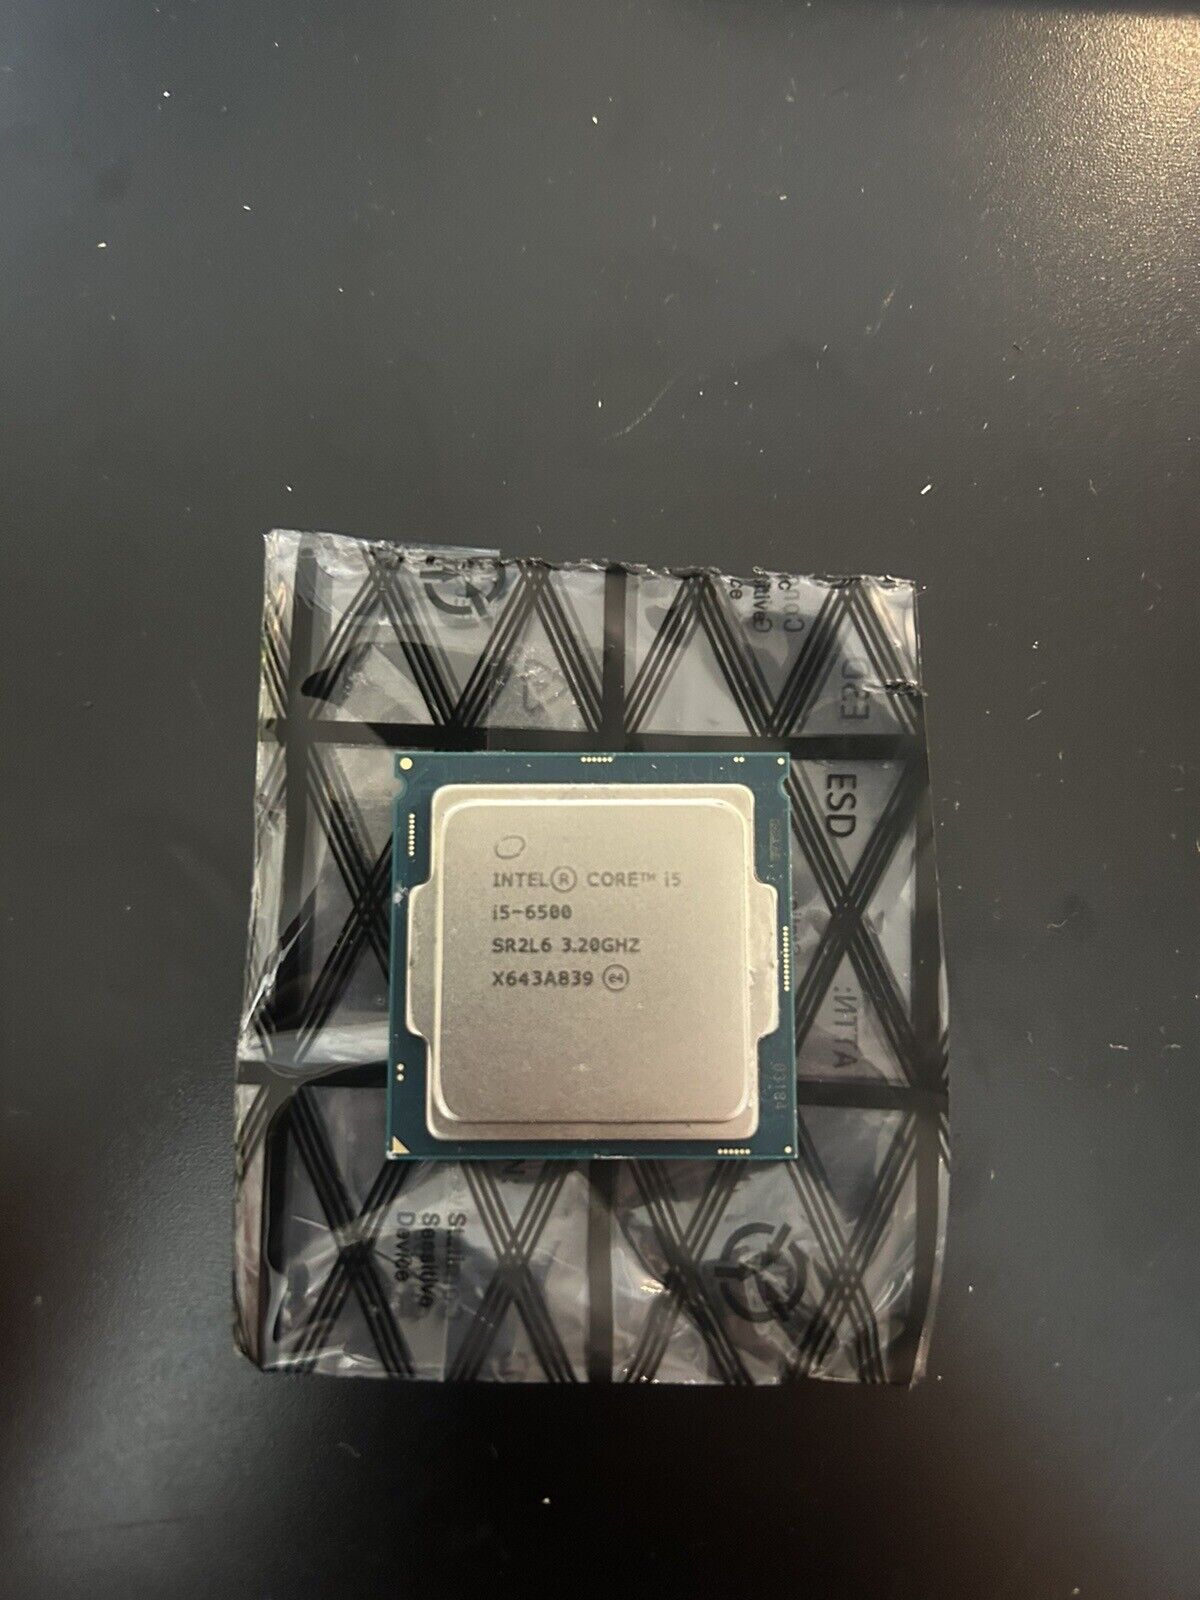 Intel Core i5-6500 Processor (3.2GHz, 4 Core, LGA1151 Socket) - SR2L6